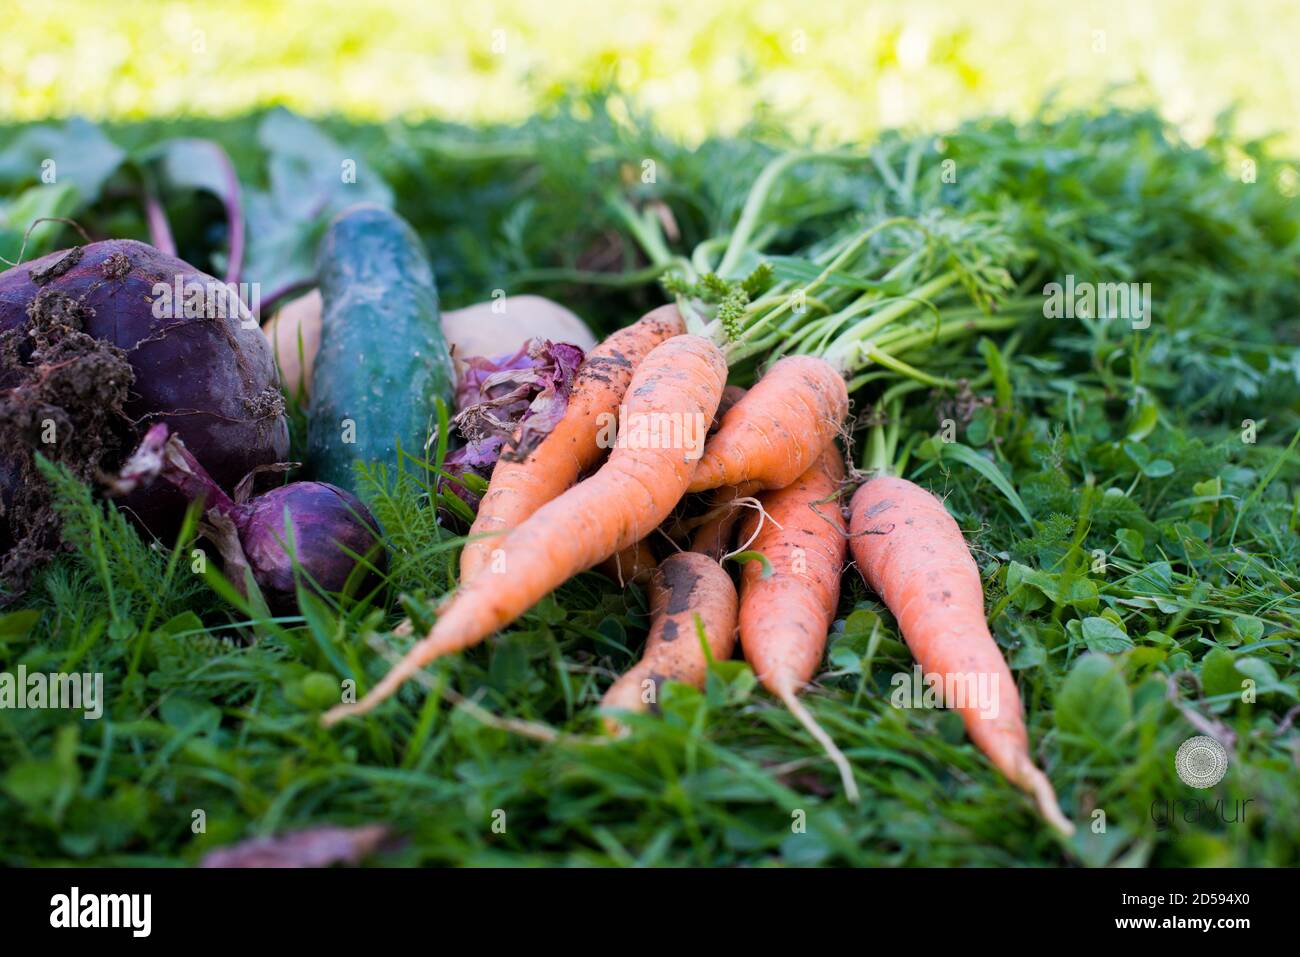 Primer plano de zanahorias recién recogidas, remolacha, papa, cebolla y pepino en la hierba Foto de stock